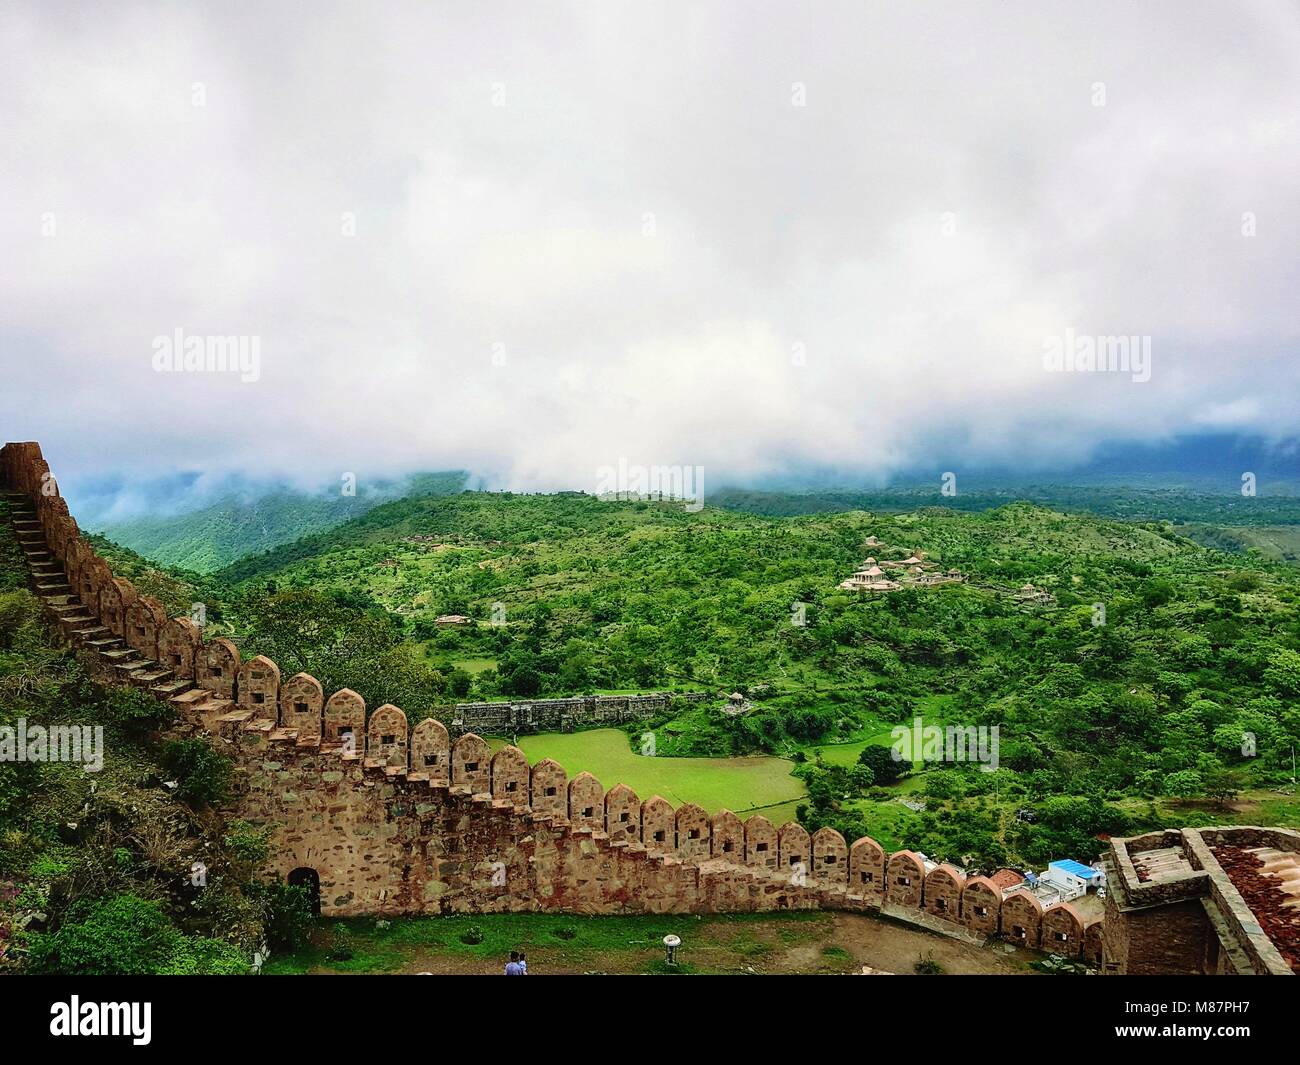 Luogo di nascita di Mewars leggendario re, Maharana Pratap. Kumbhalgarh Fort, Grande Muraglia di India, durante la stagione delle piogge, Rajasthan Turismo, Fort del Rajasthan , Foto Stock